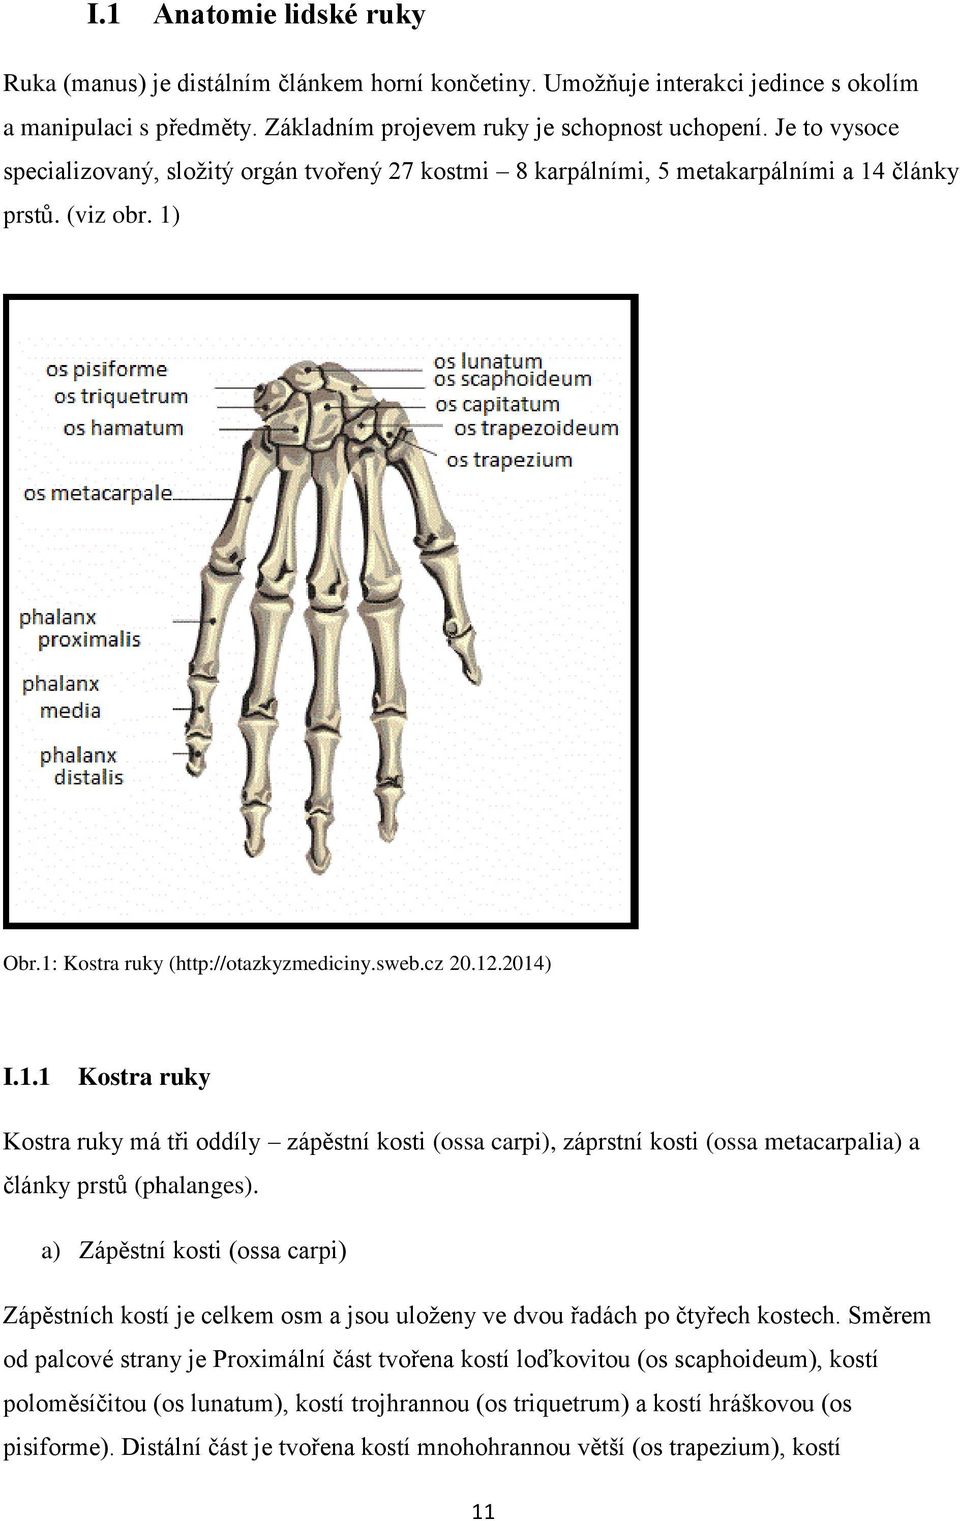 články prstů. (viz obr. 1) Obr.1: Kostra ruky (http://otazkyzmediciny.sweb.cz 20.12.2014) I.1.1 Kostra ruky Kostra ruky má tři oddíly zápěstní kosti (ossa carpi), záprstní kosti (ossa metacarpalia) a články prstů (phalanges).